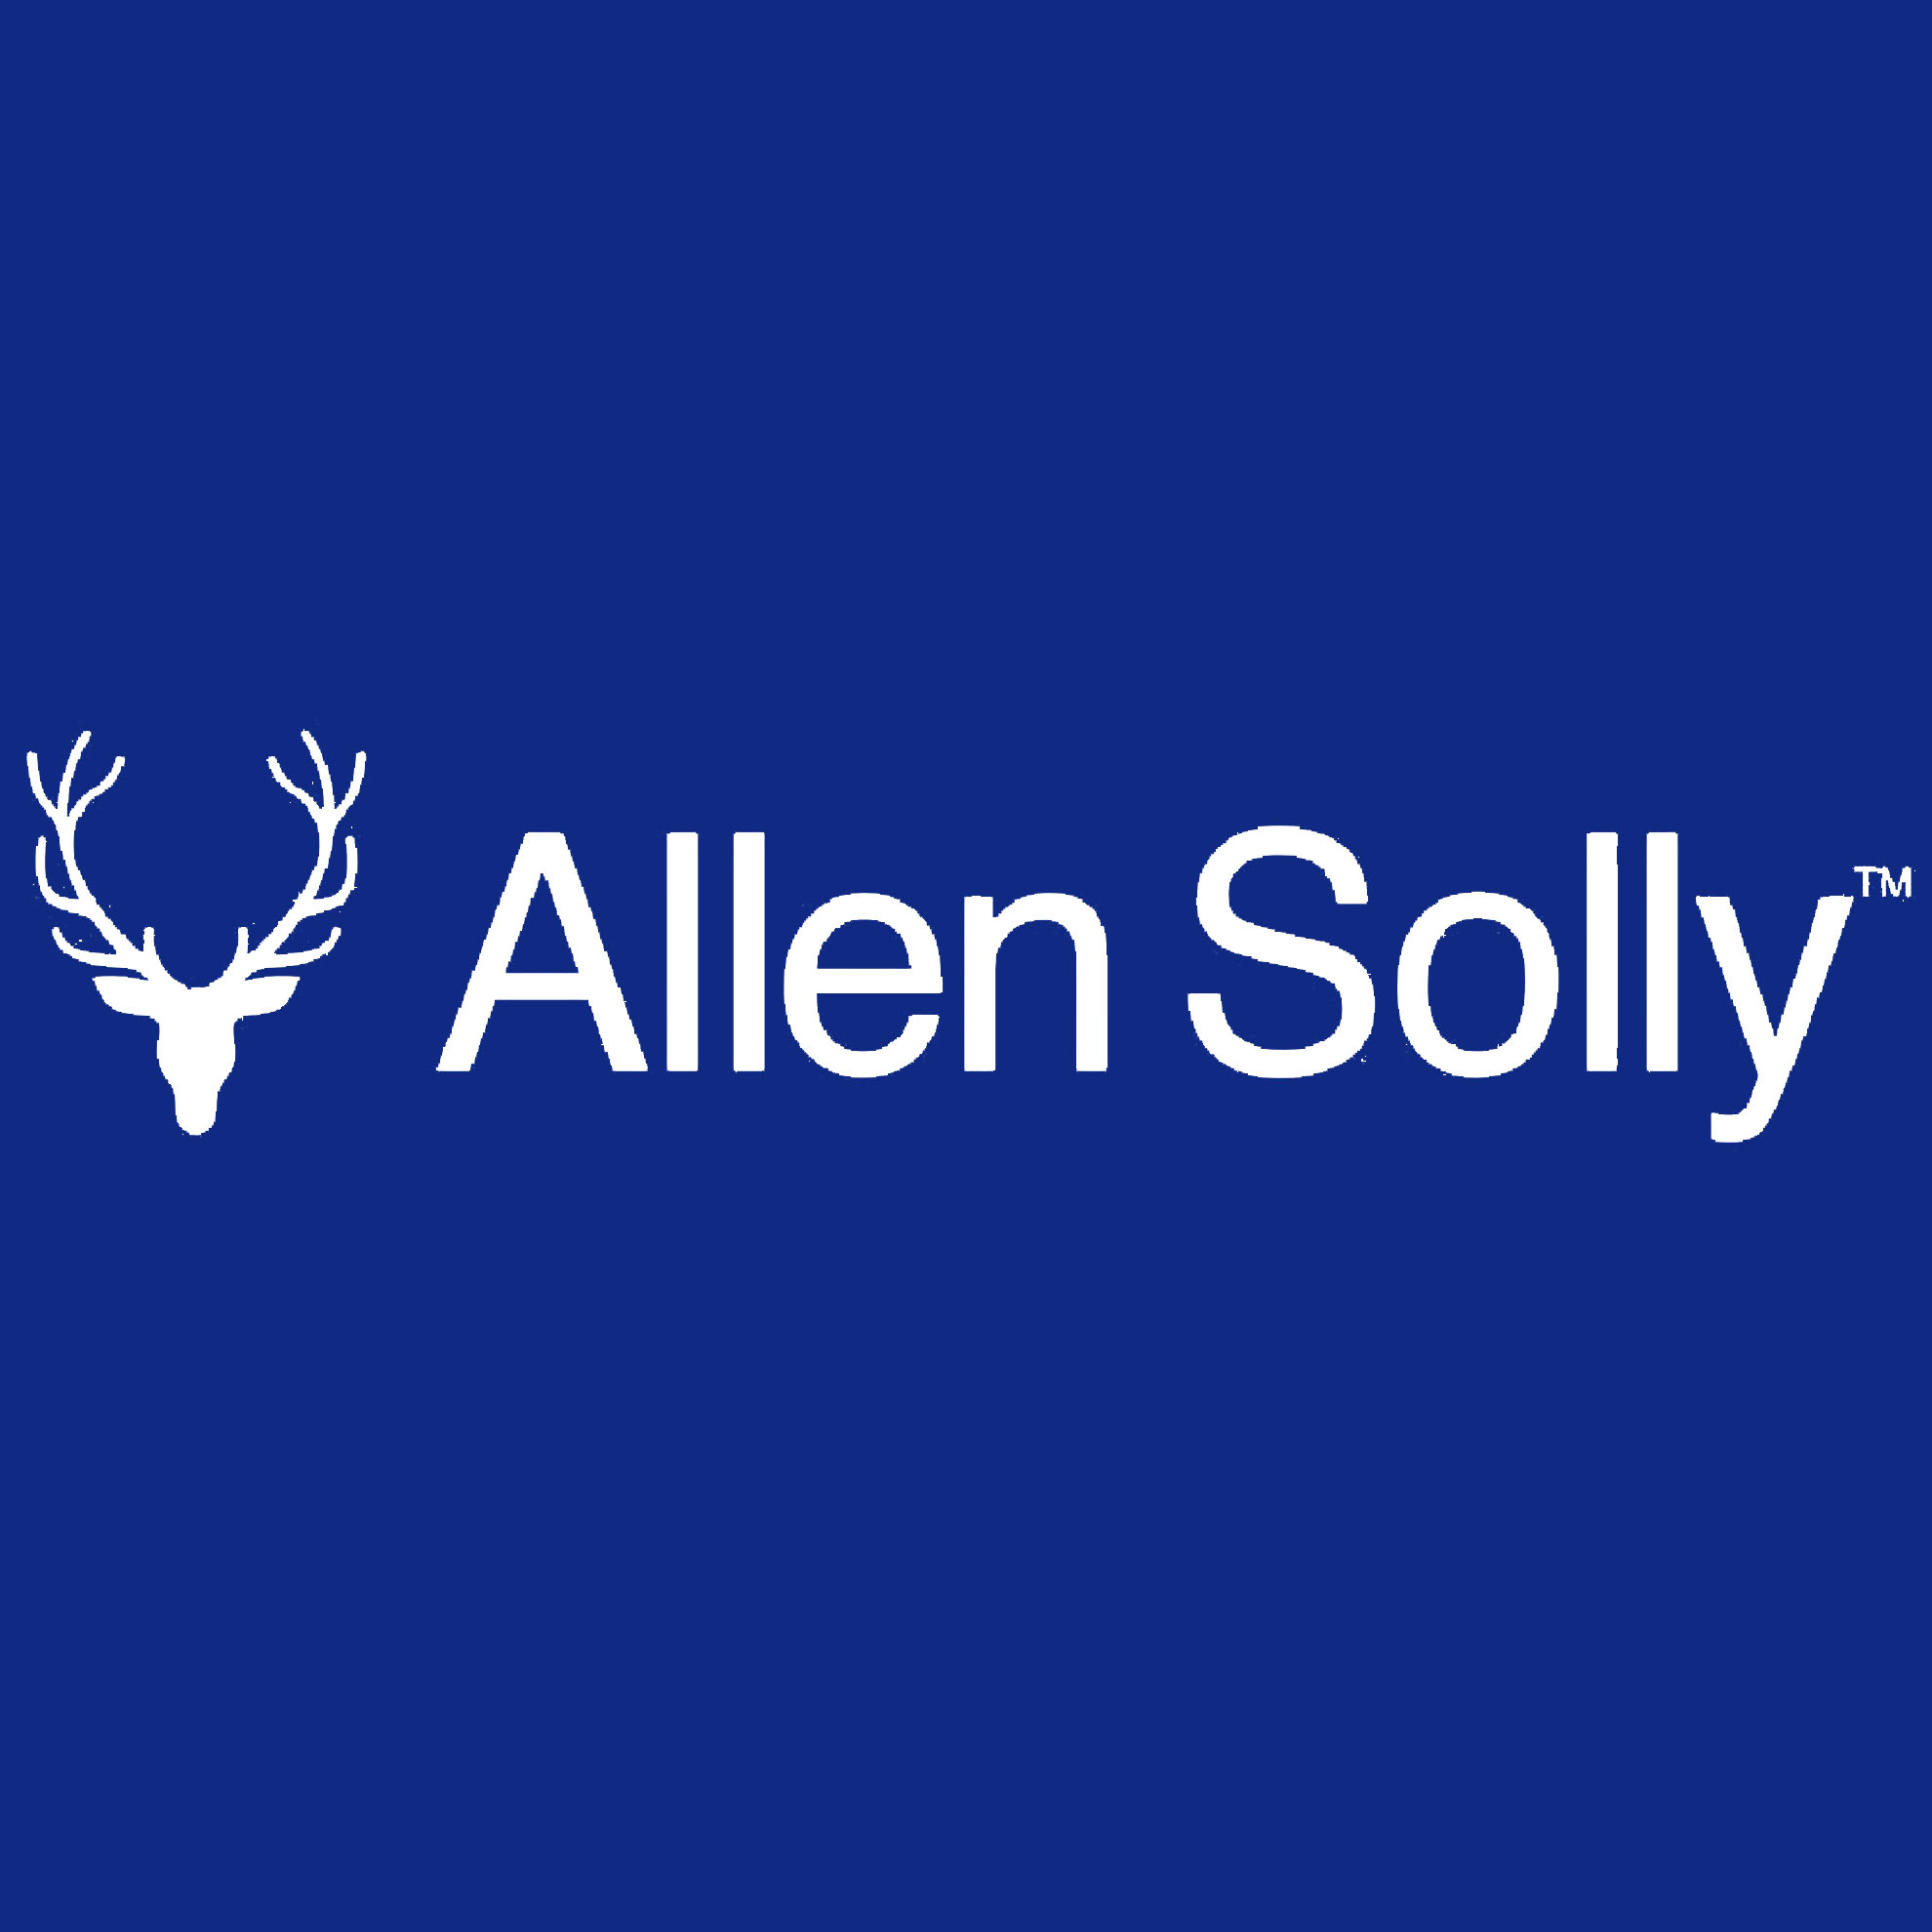 Allen Solly | PDF | Retail | Brand